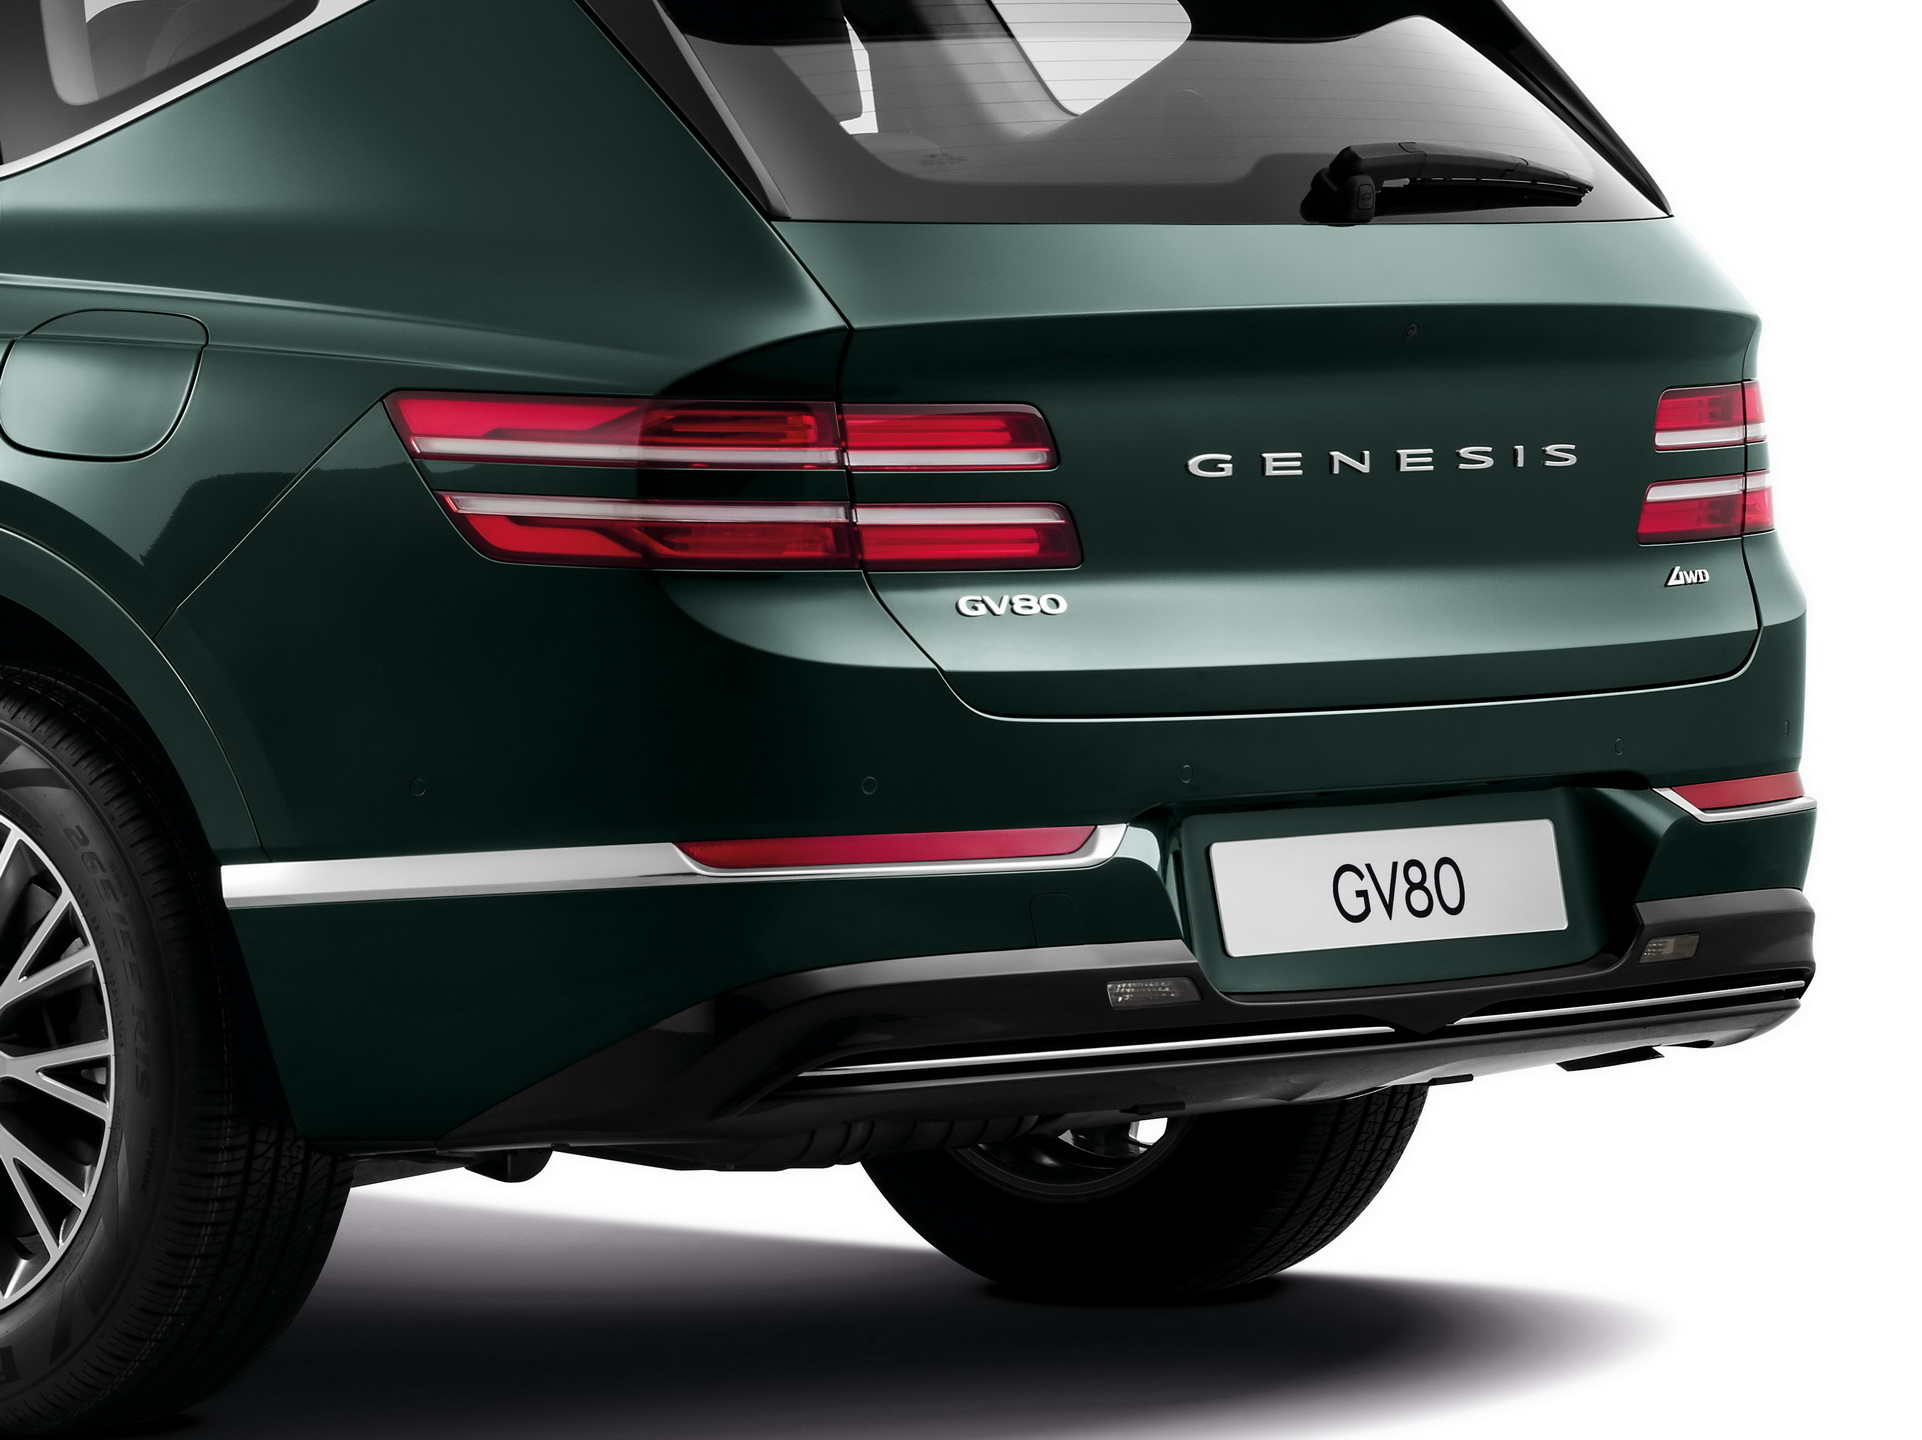 Genesis'in ilk SUV modeli GV80 tanıtıldı